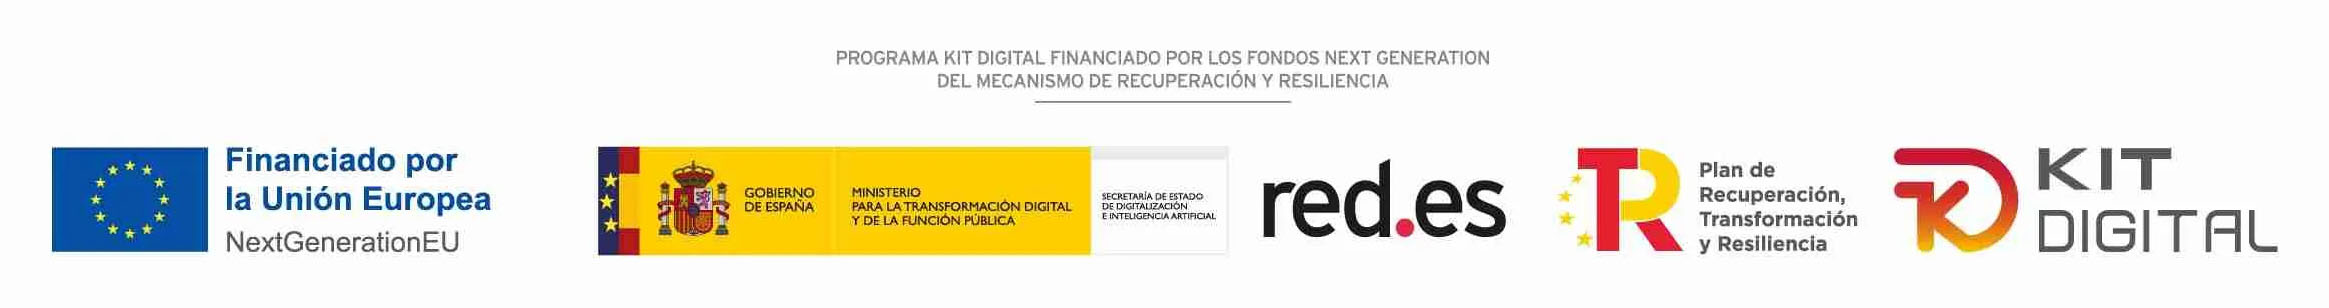 Programa Kit digital cofinanciado por los fondos next generation (EU)del mecanismo de recuperación y resilencia